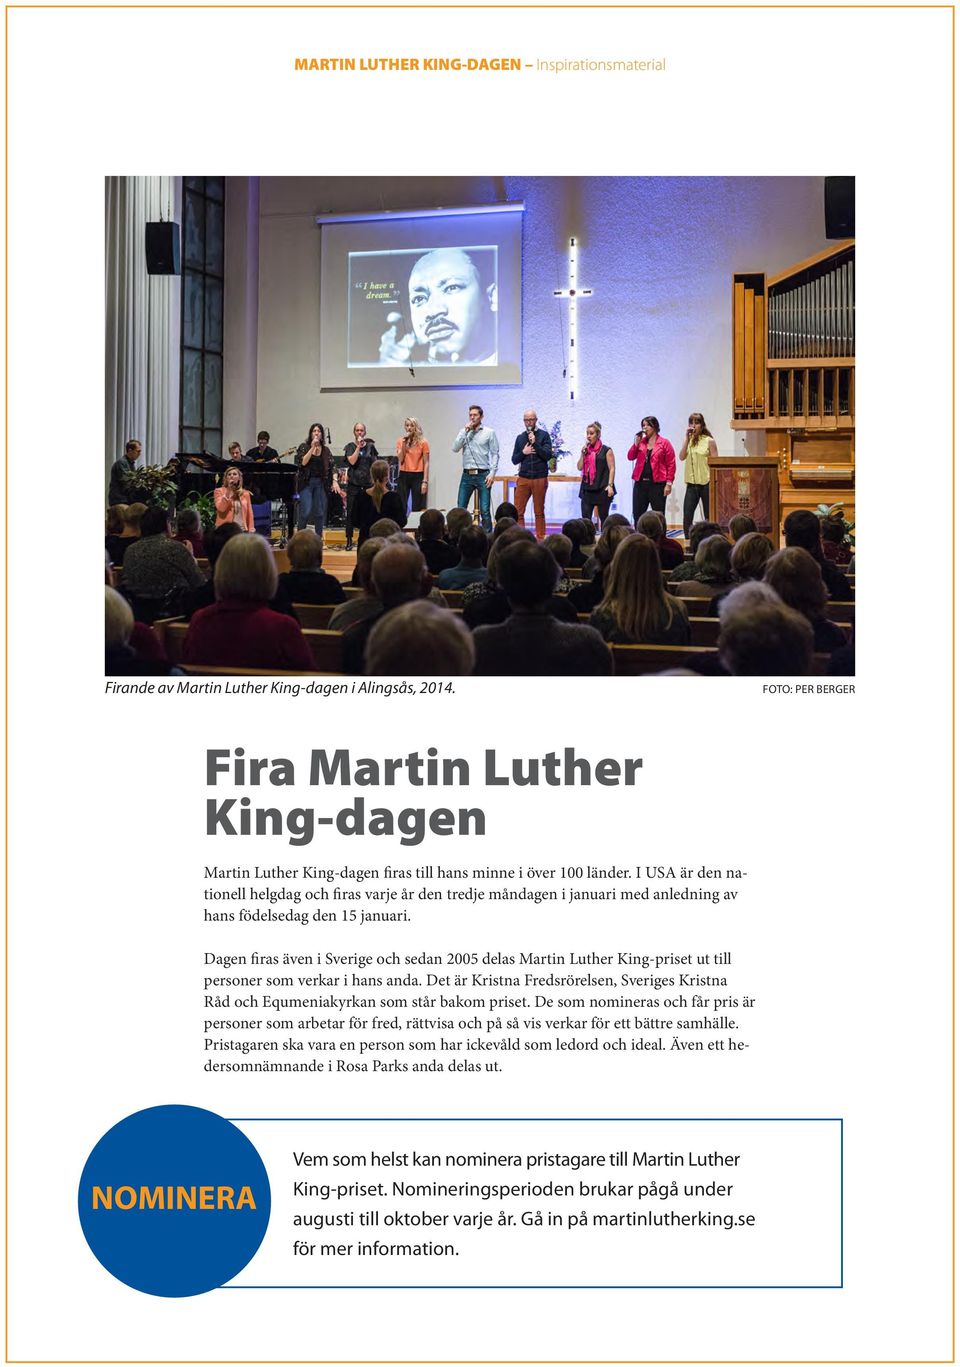 Dagen firas även i Sverige och sedan 2005 delas Martin Luther King-priset ut till personer som verkar i hans anda.